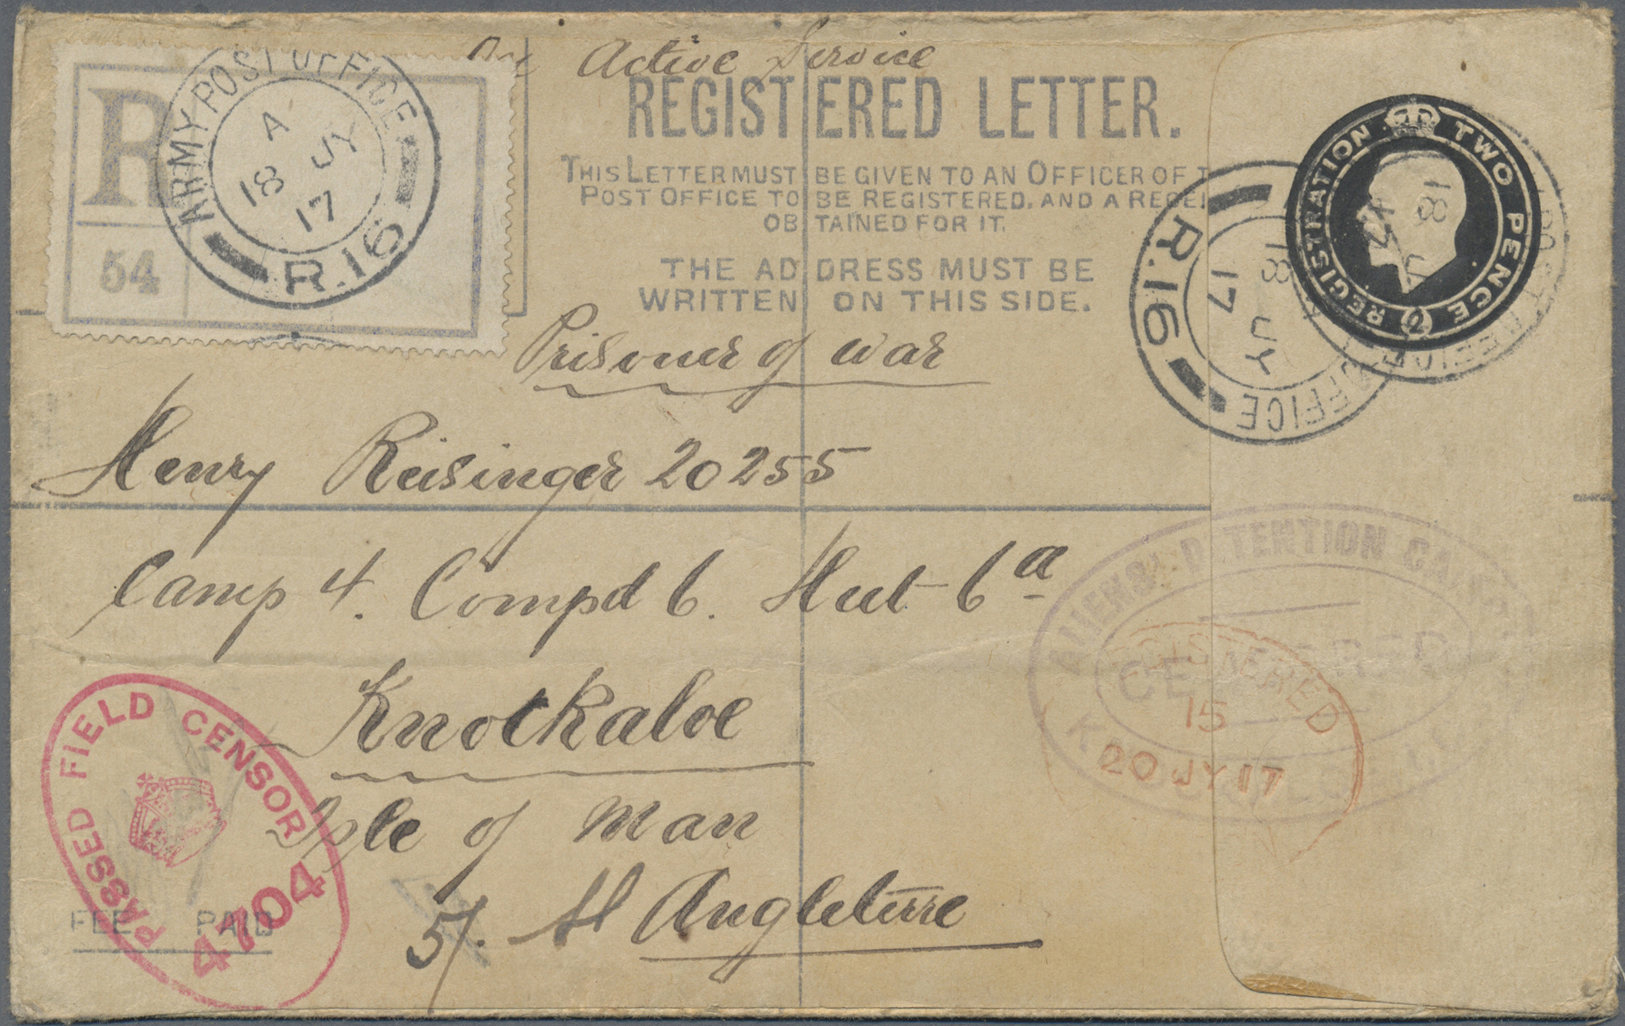 GA Großbritannien - Ganzsachen: 1917. Registered Postal Stationery Envelope ‘two Pence’ Black Endorsed ‘On Active - 1840 Enveloppes Mulready